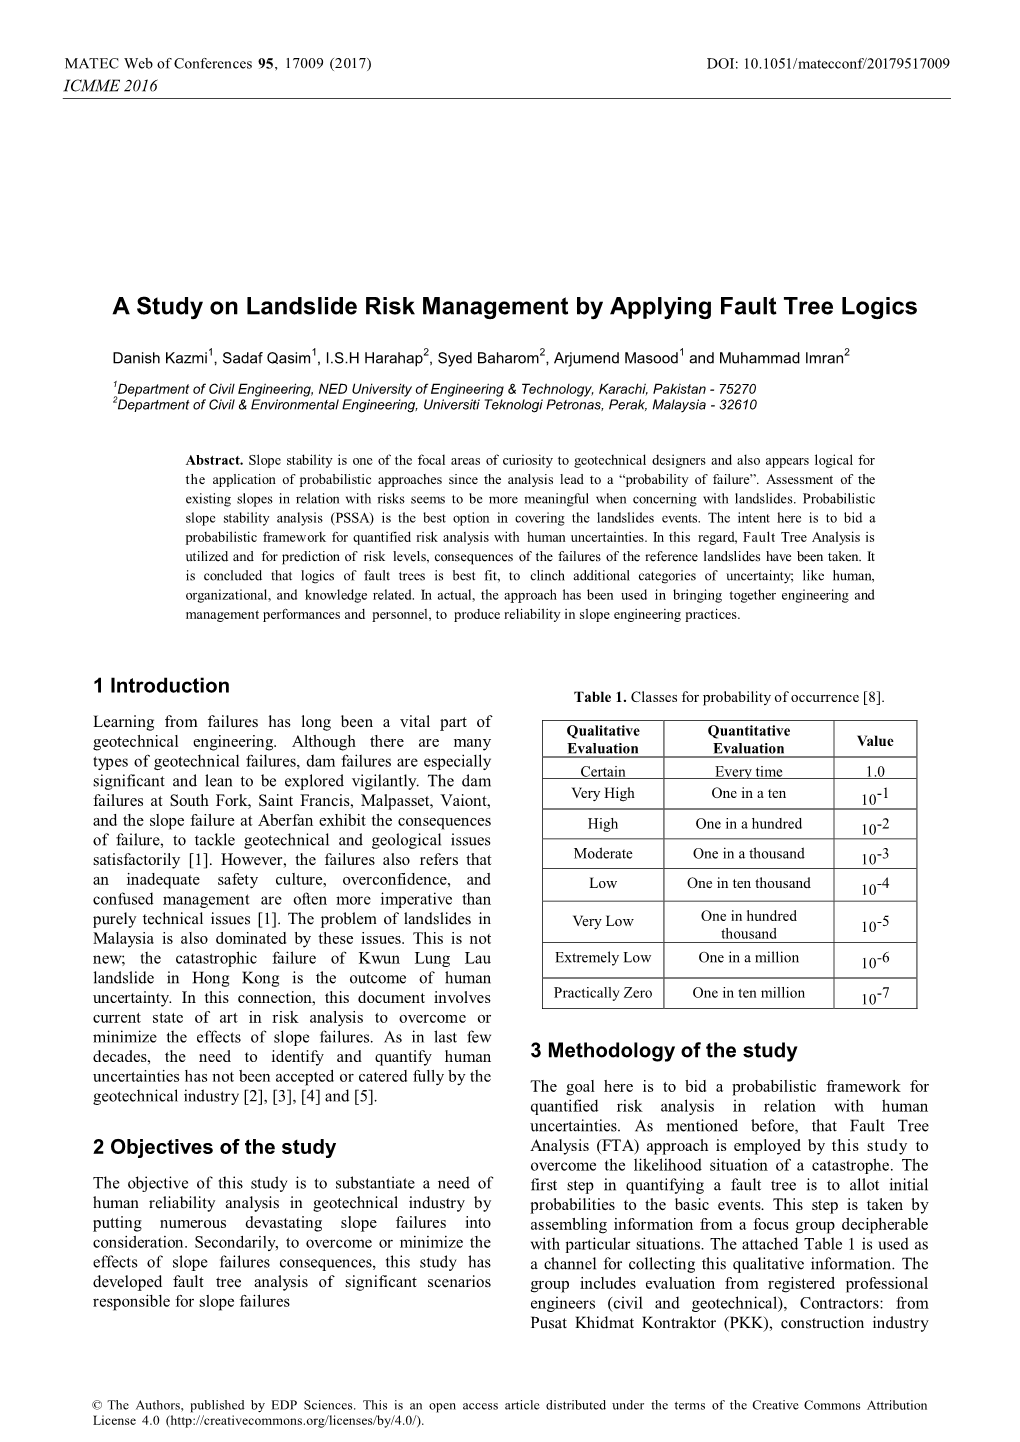 A Study on Landslide Risk Management by Applying Fault Tree Logics